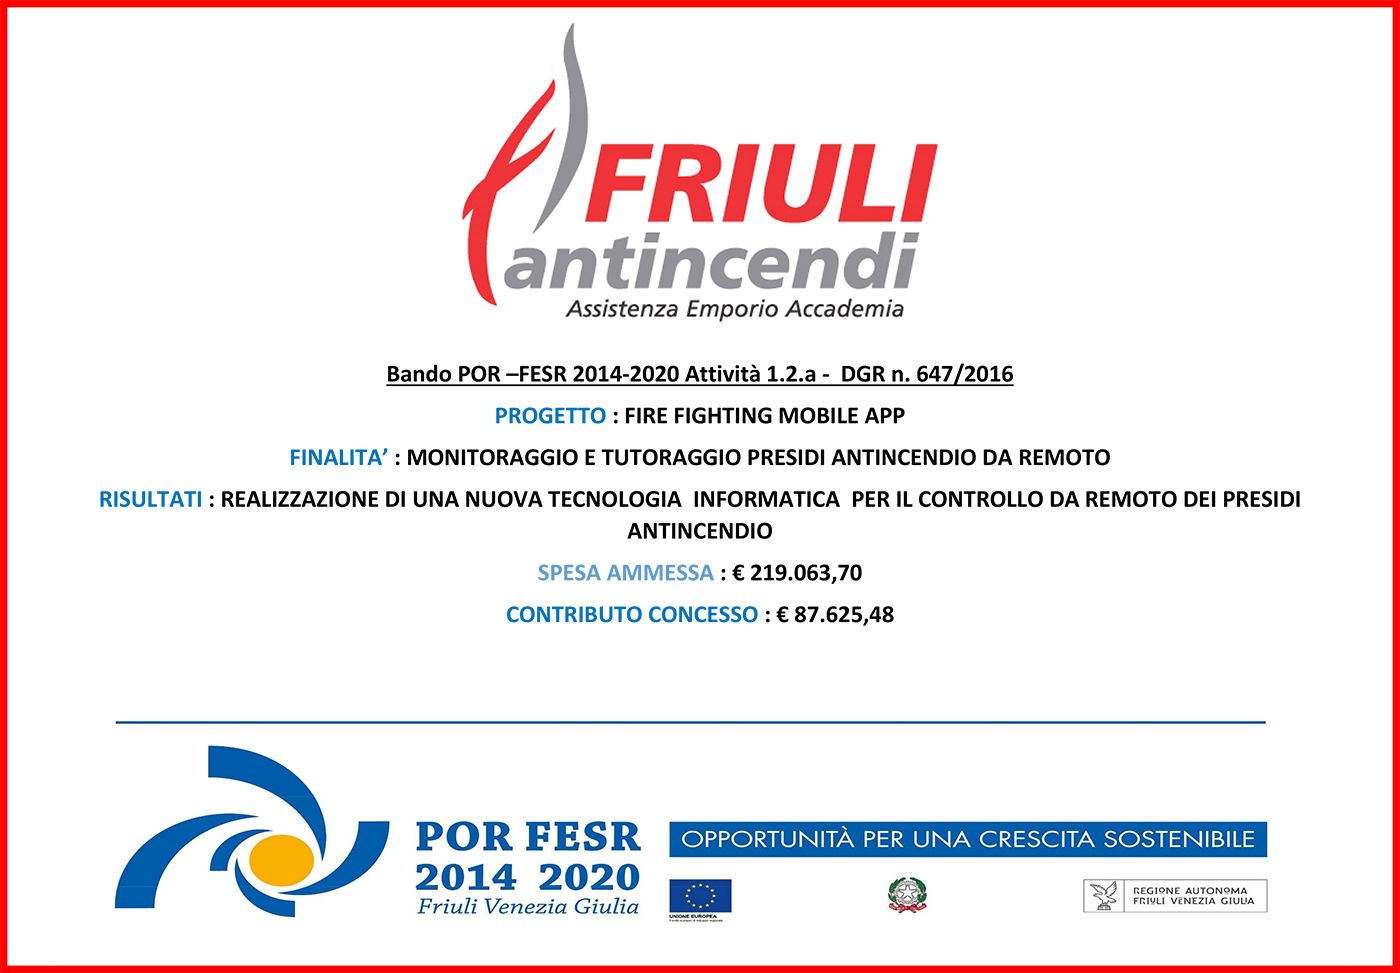 Bando POR-FESR 2014-2020 – Fire Fighting Mobile APP